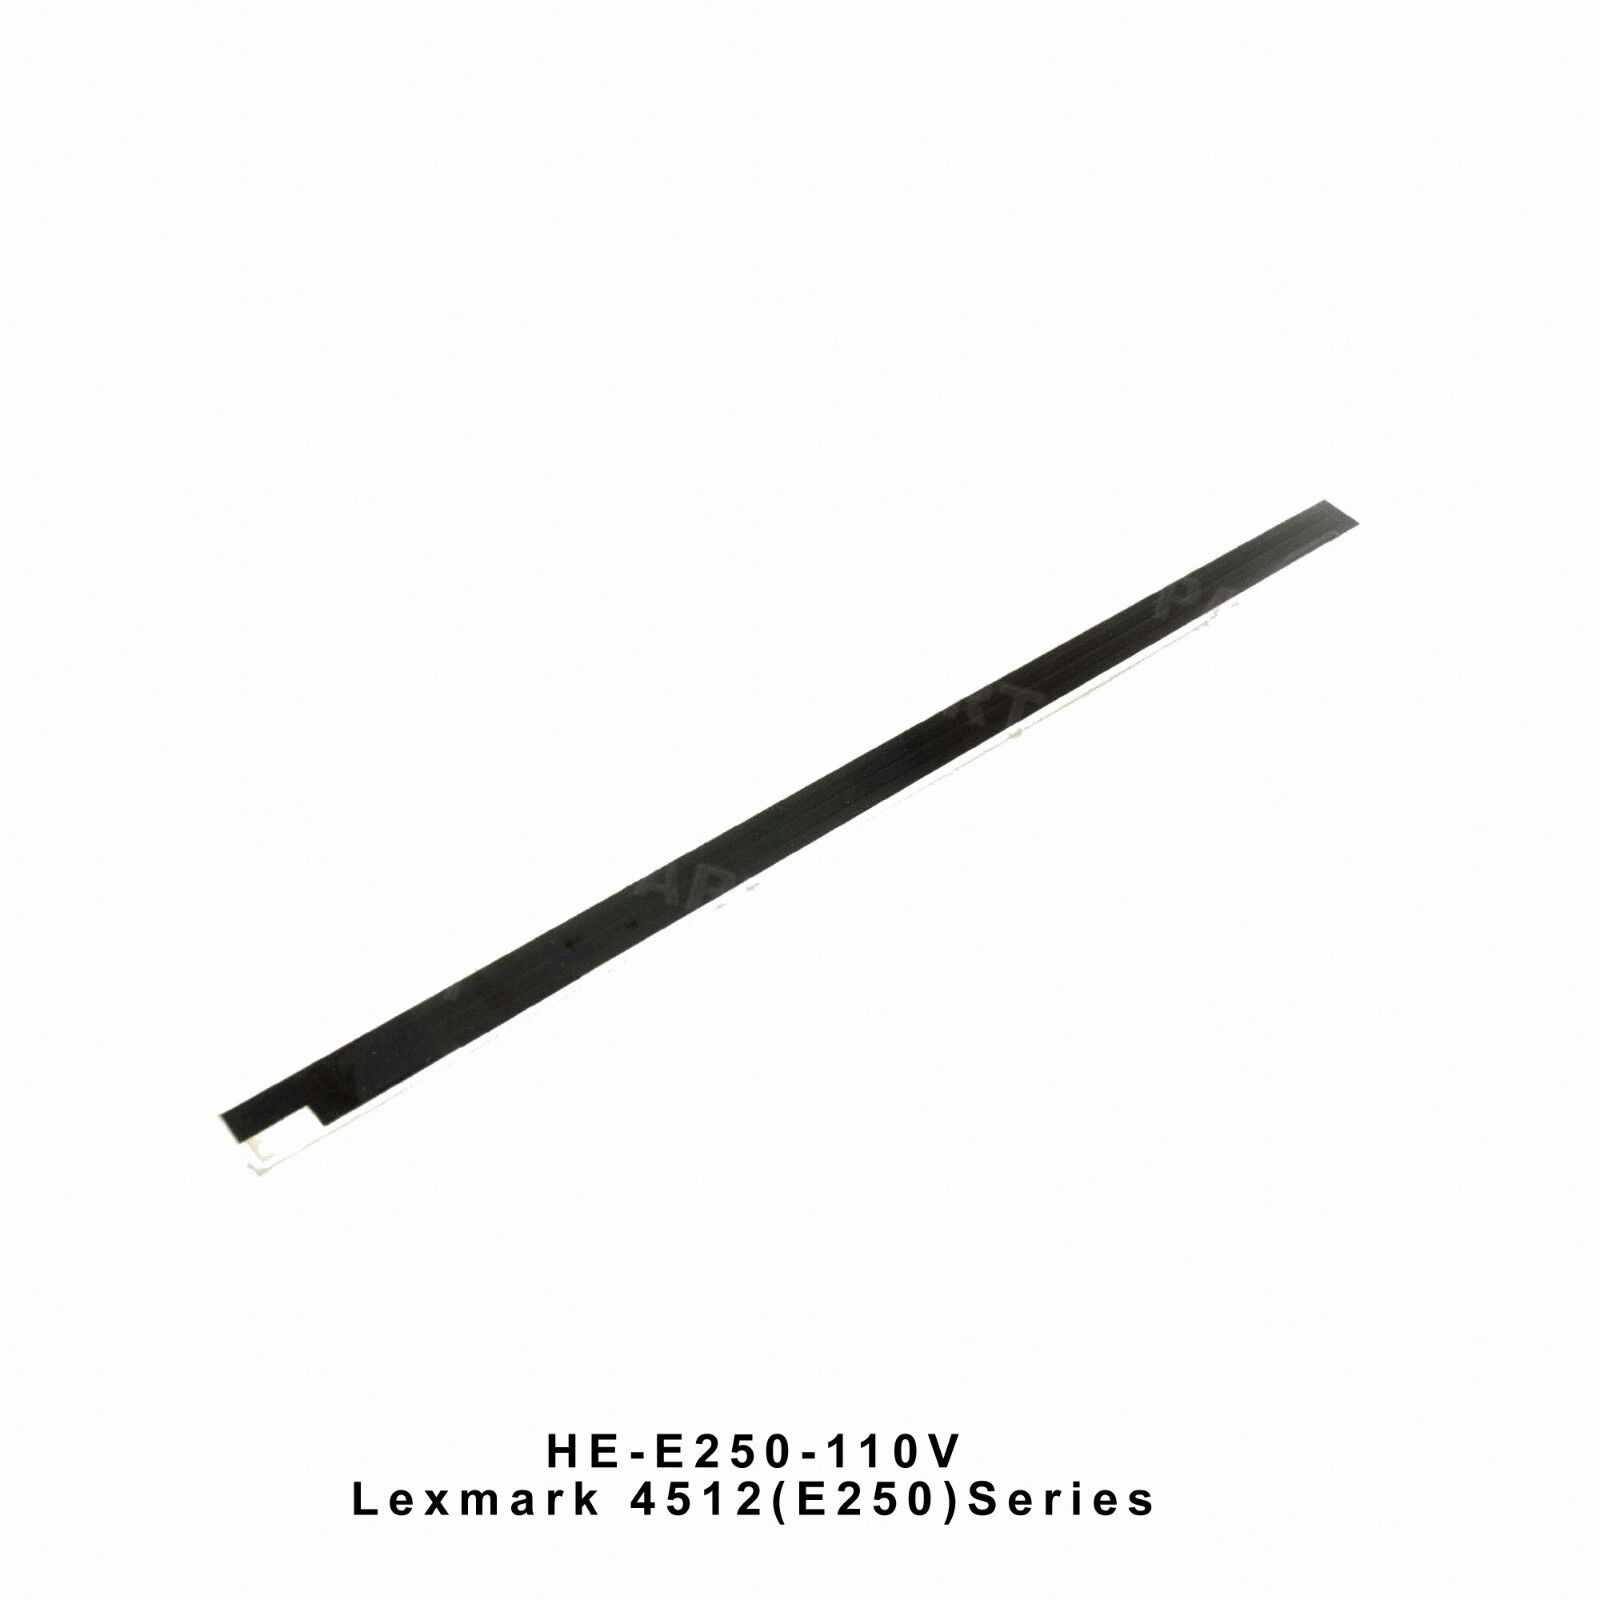 Lexmark 4512 E250 4513 260 Fuser Heating Element (110V) HE-E250-110V OEM Quality